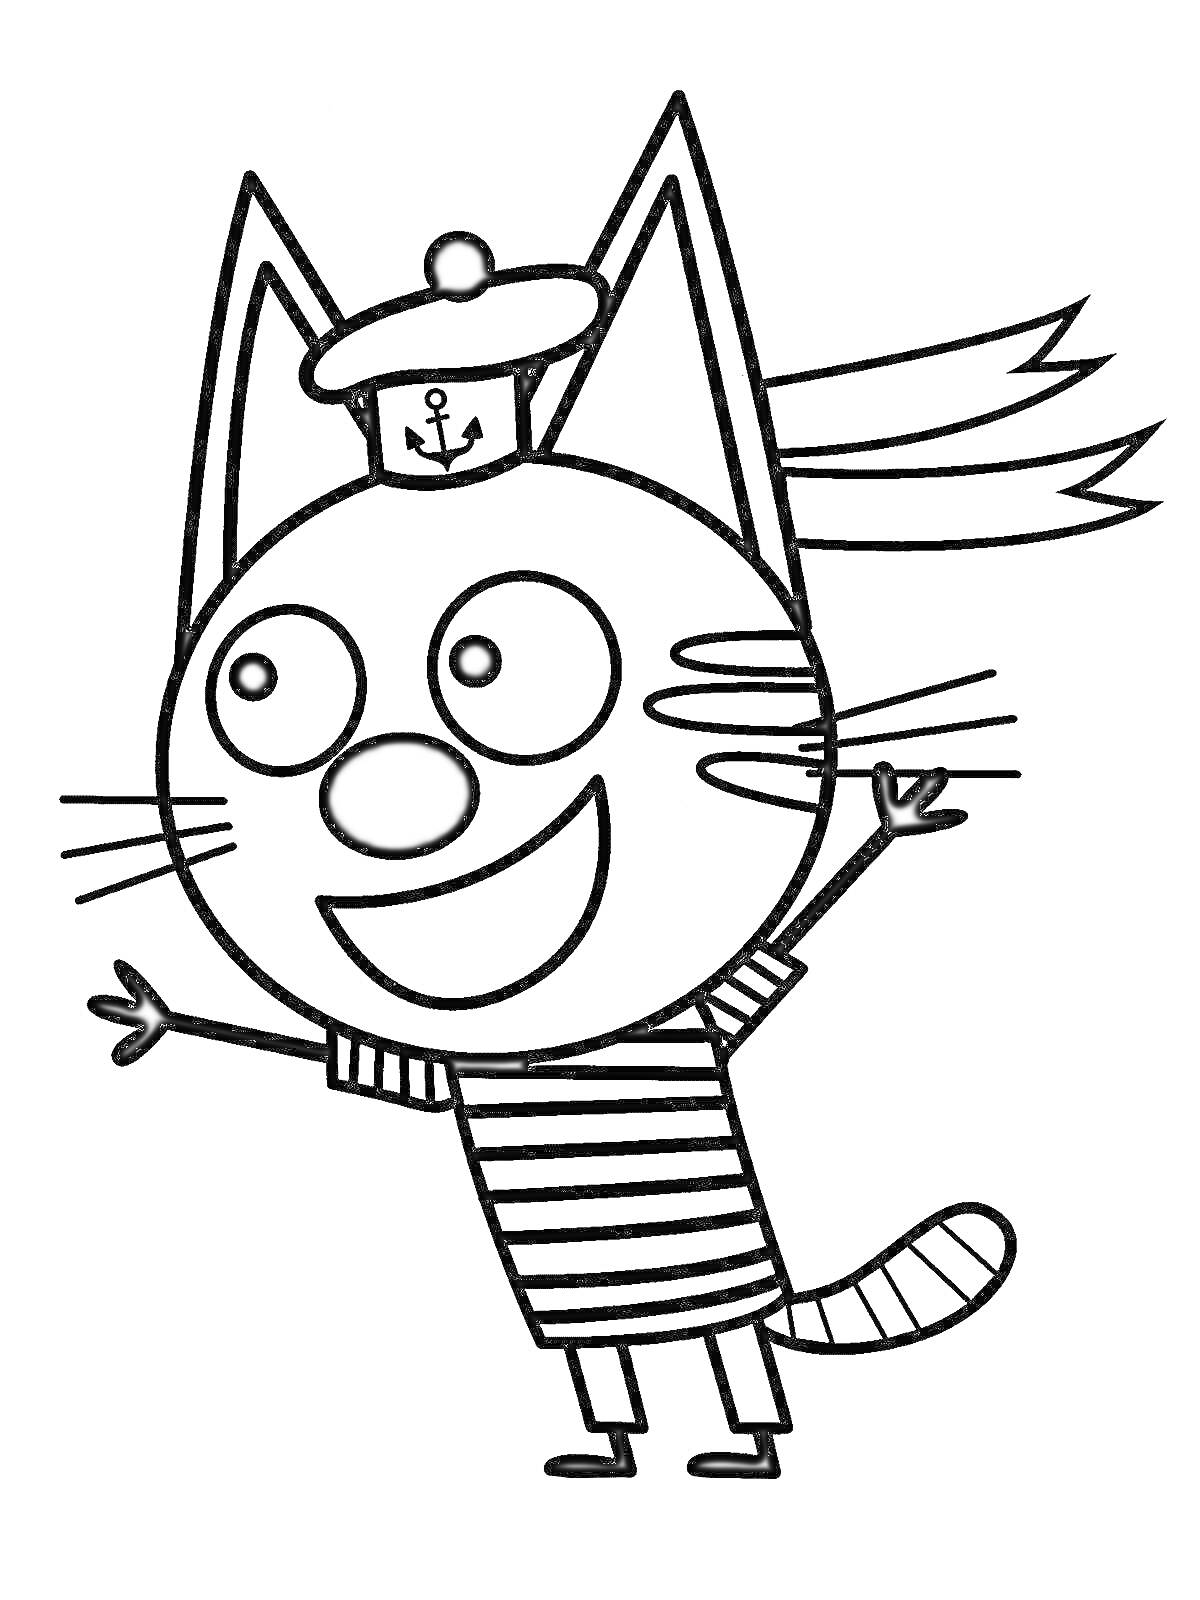 Раскраска Кот в матросской форме с фуражкой и поднятыми лапами